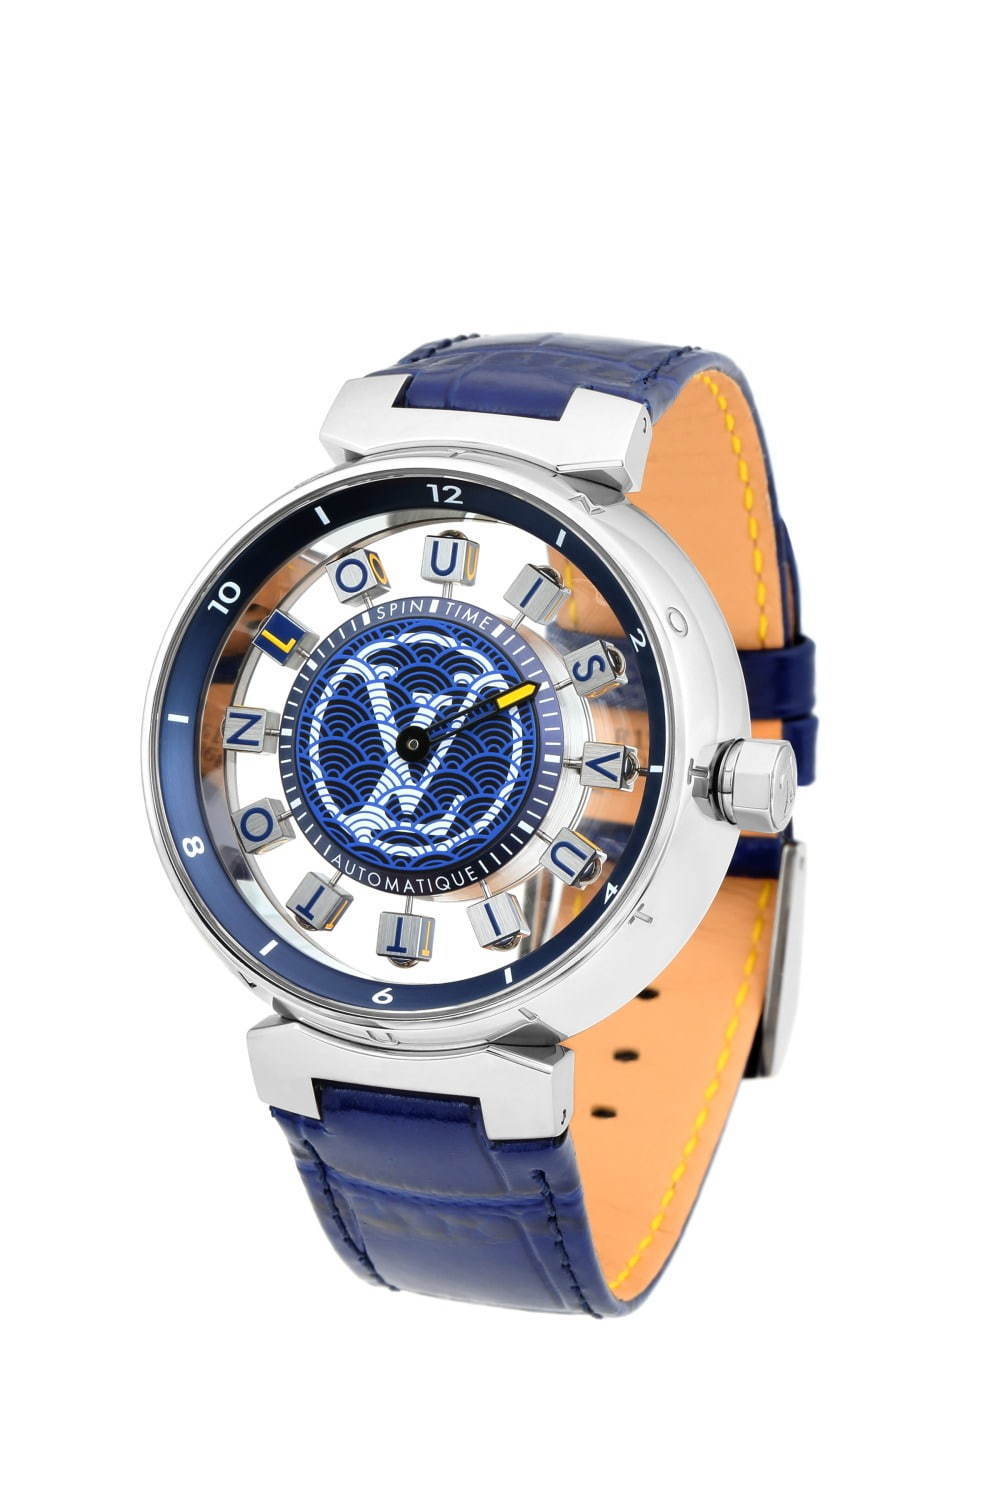 ルイヴィトンの腕時計「タンブール」レディース